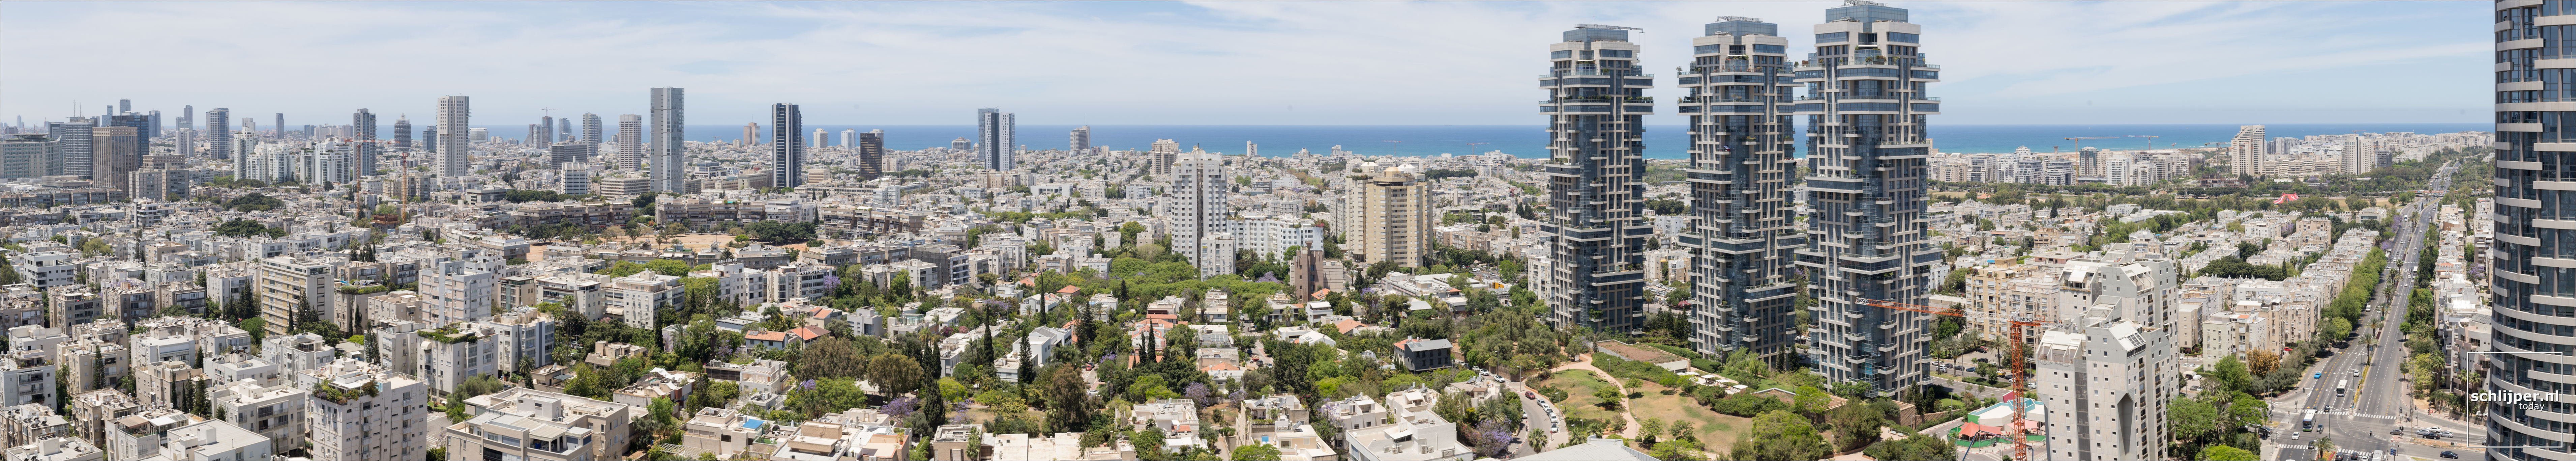 Israel, Tel Aviv, 26 mei 2019